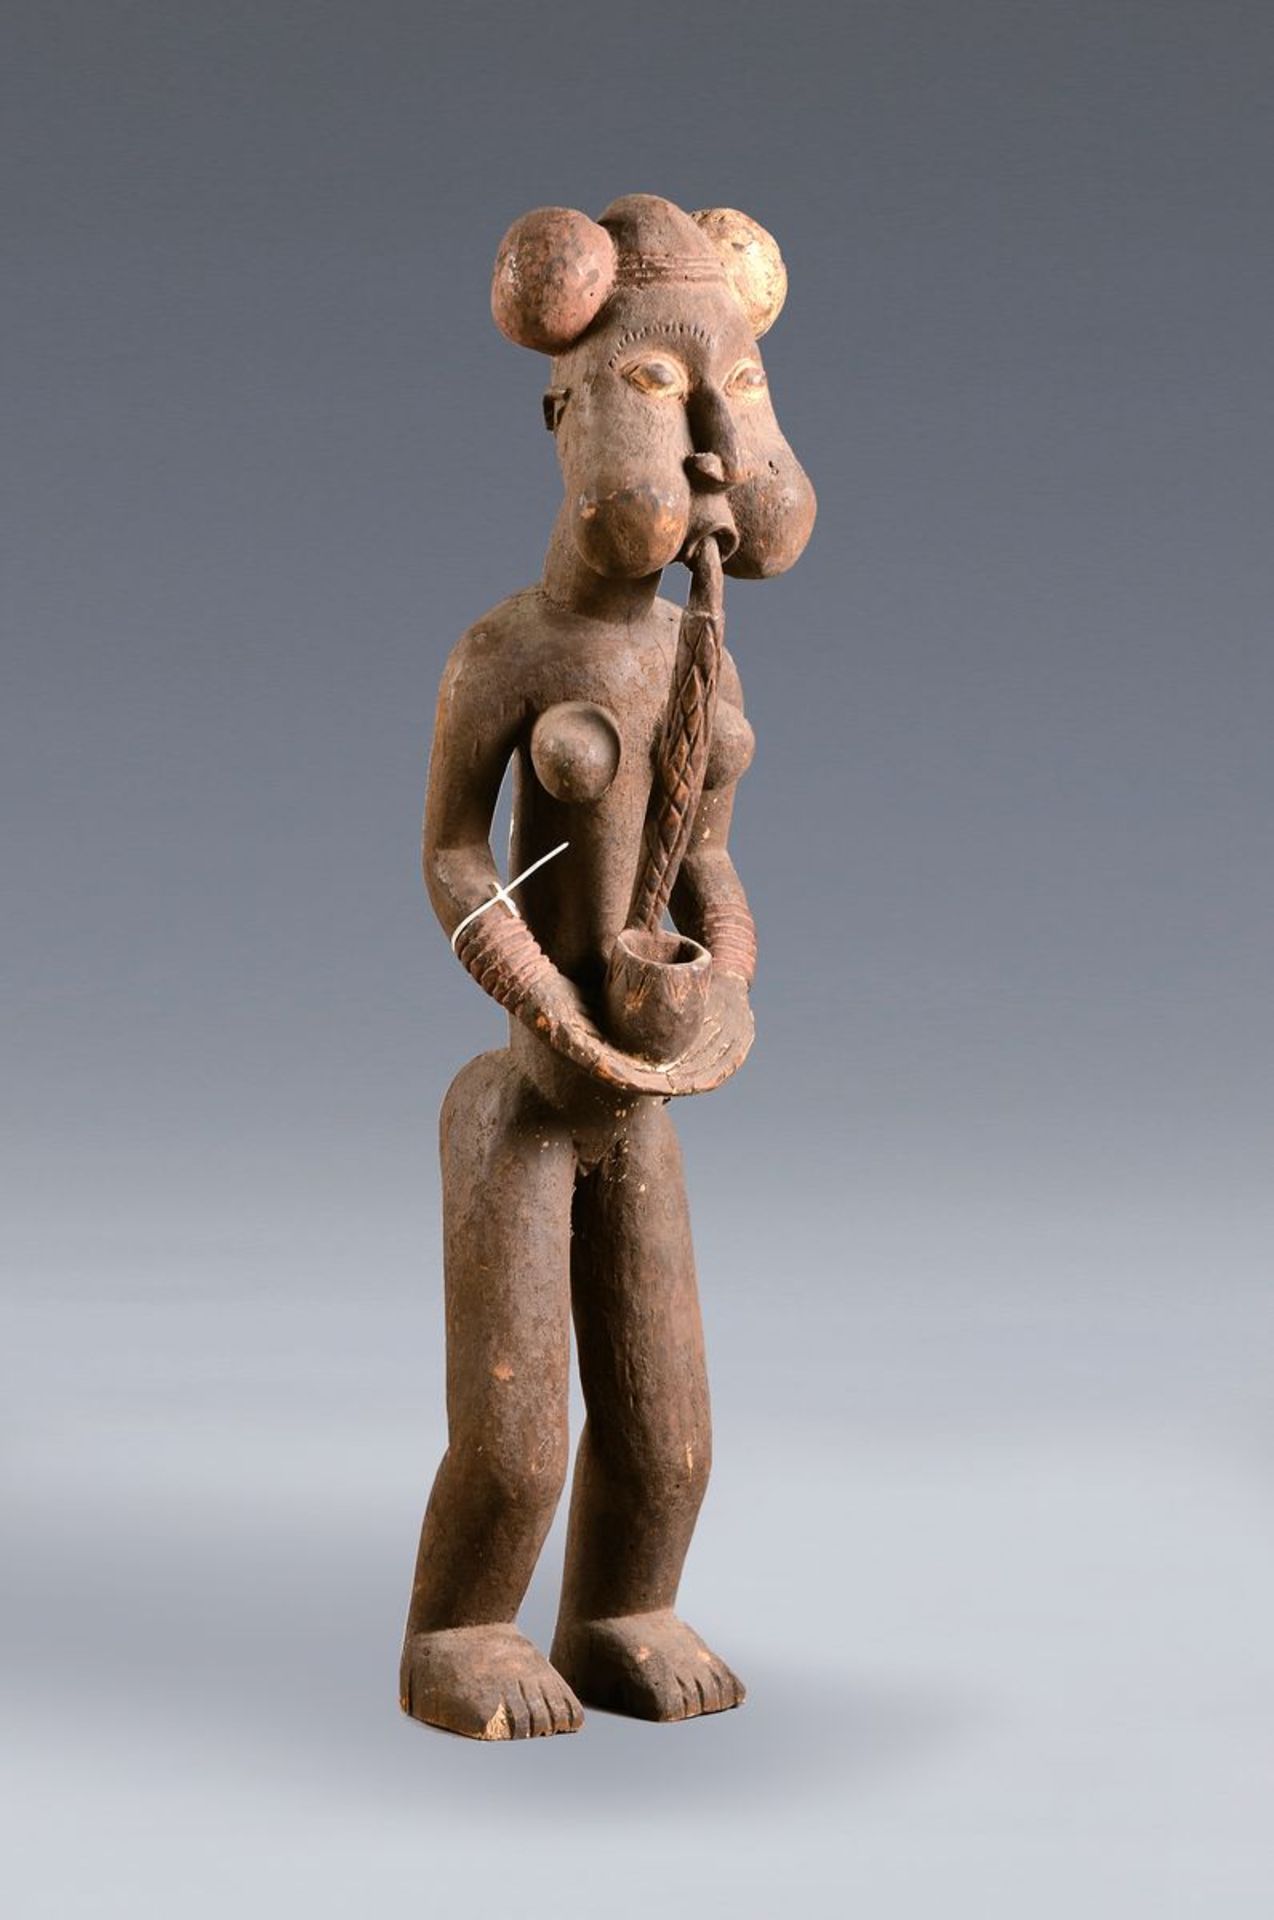 Rauchwerkstampfer in Figurenform, Kamerun, ca. 50-60 Jahre alt, Hartholz, typische Betonung der